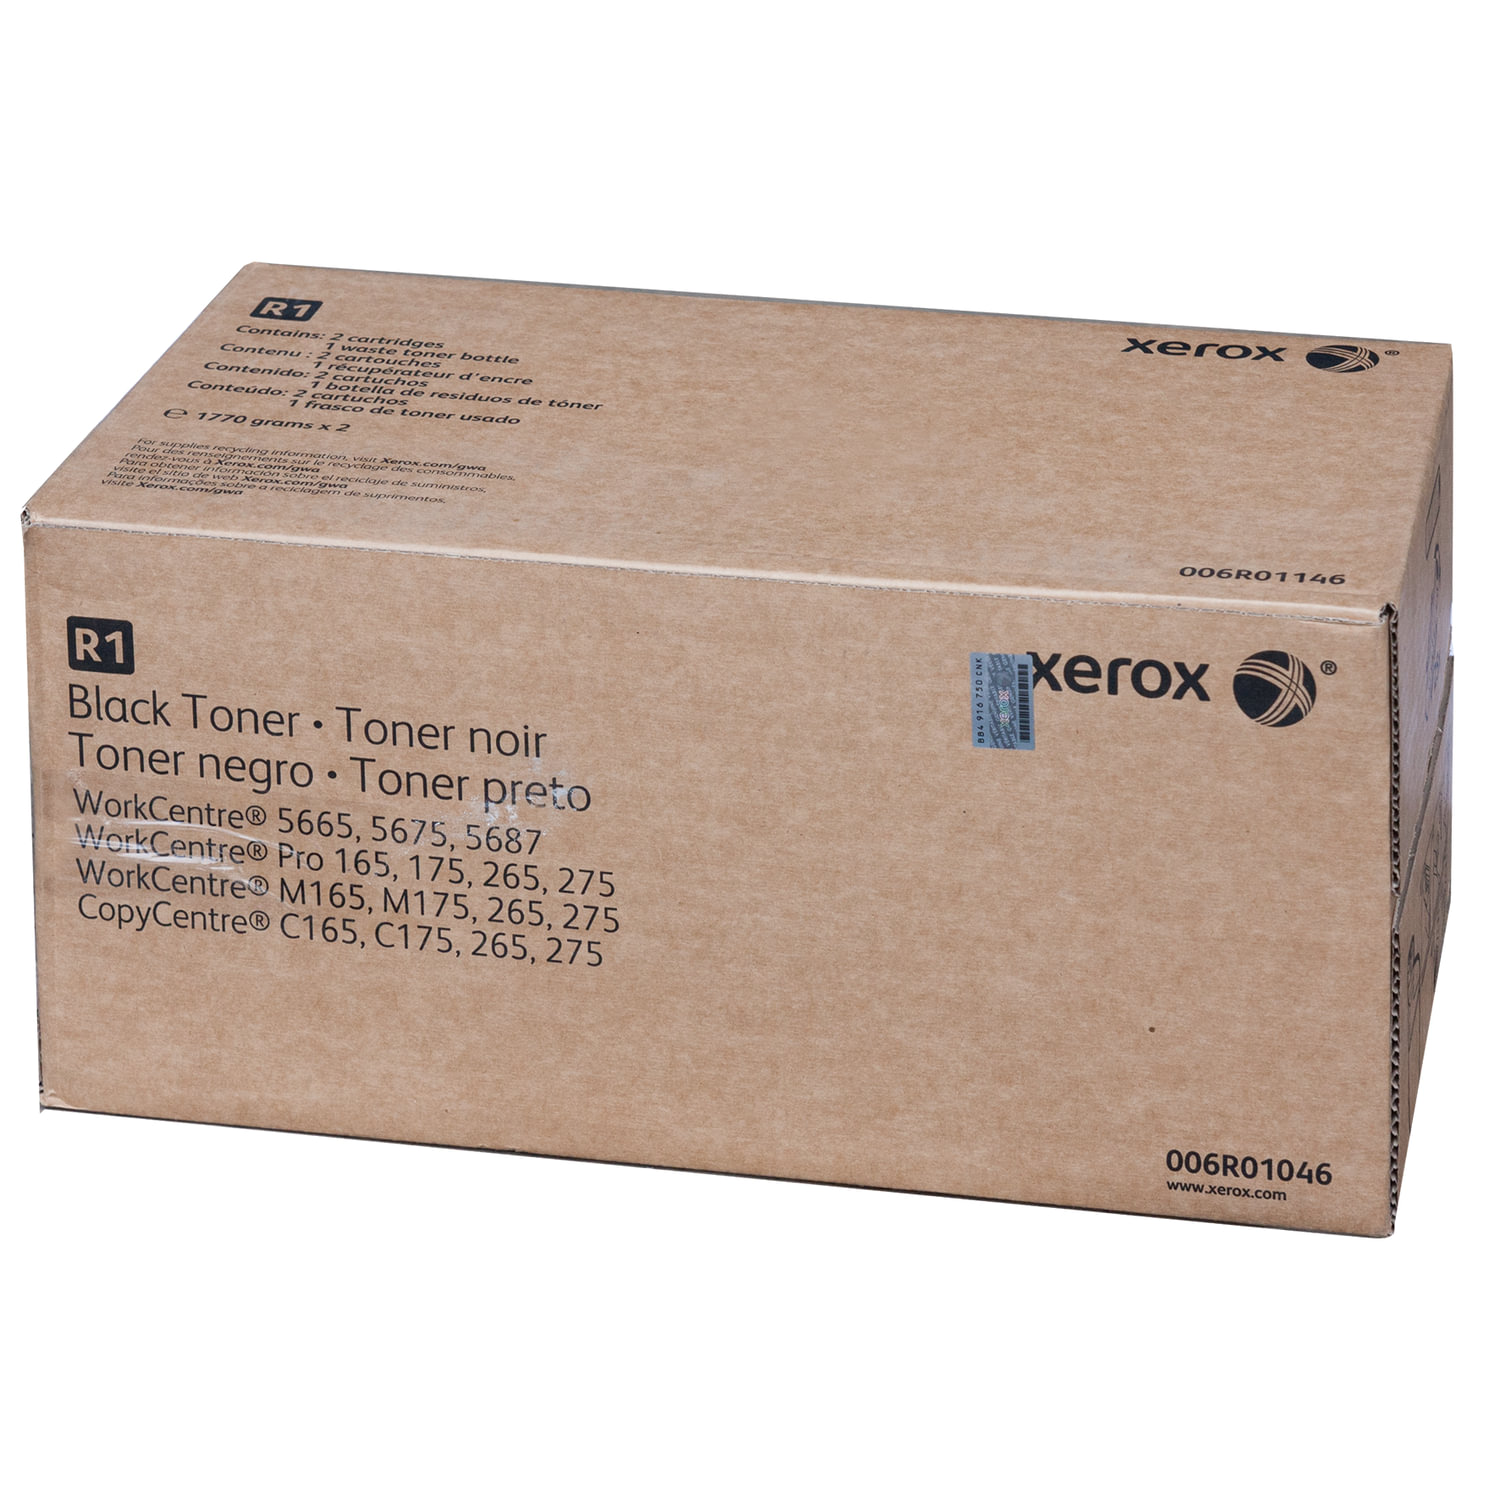 XEROX Black toner 006R01046